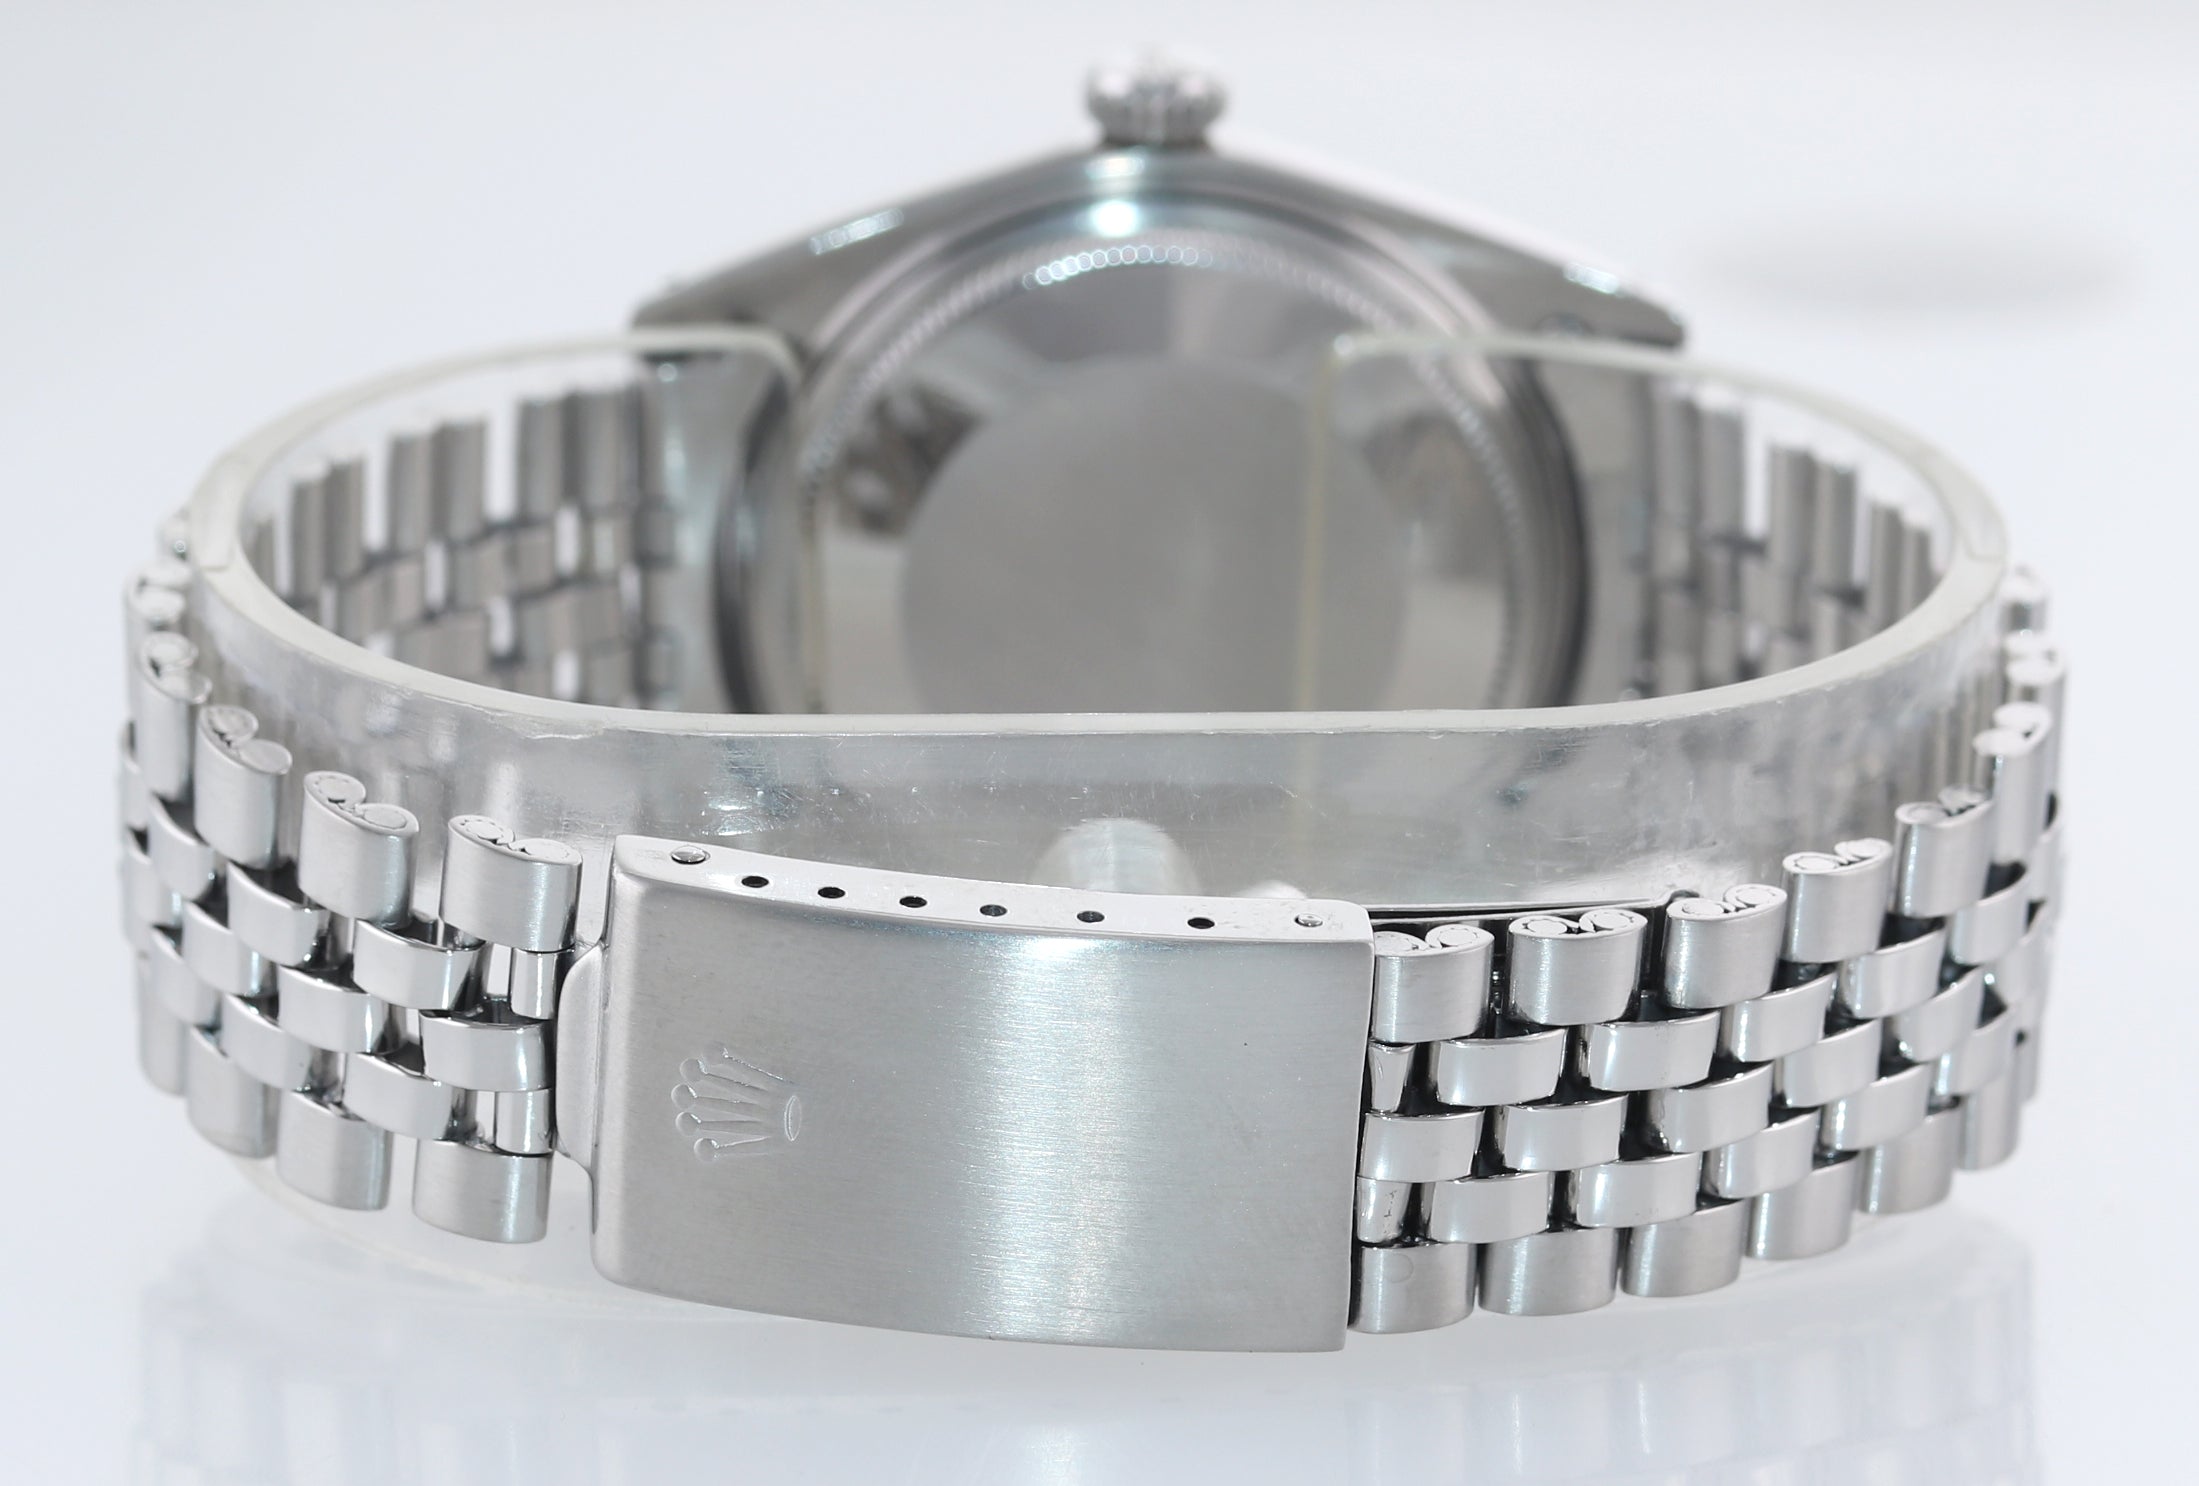 Rolex DateJust 1601 Steel Silver Pie Pan Silver Dial Jubilee Watch Box